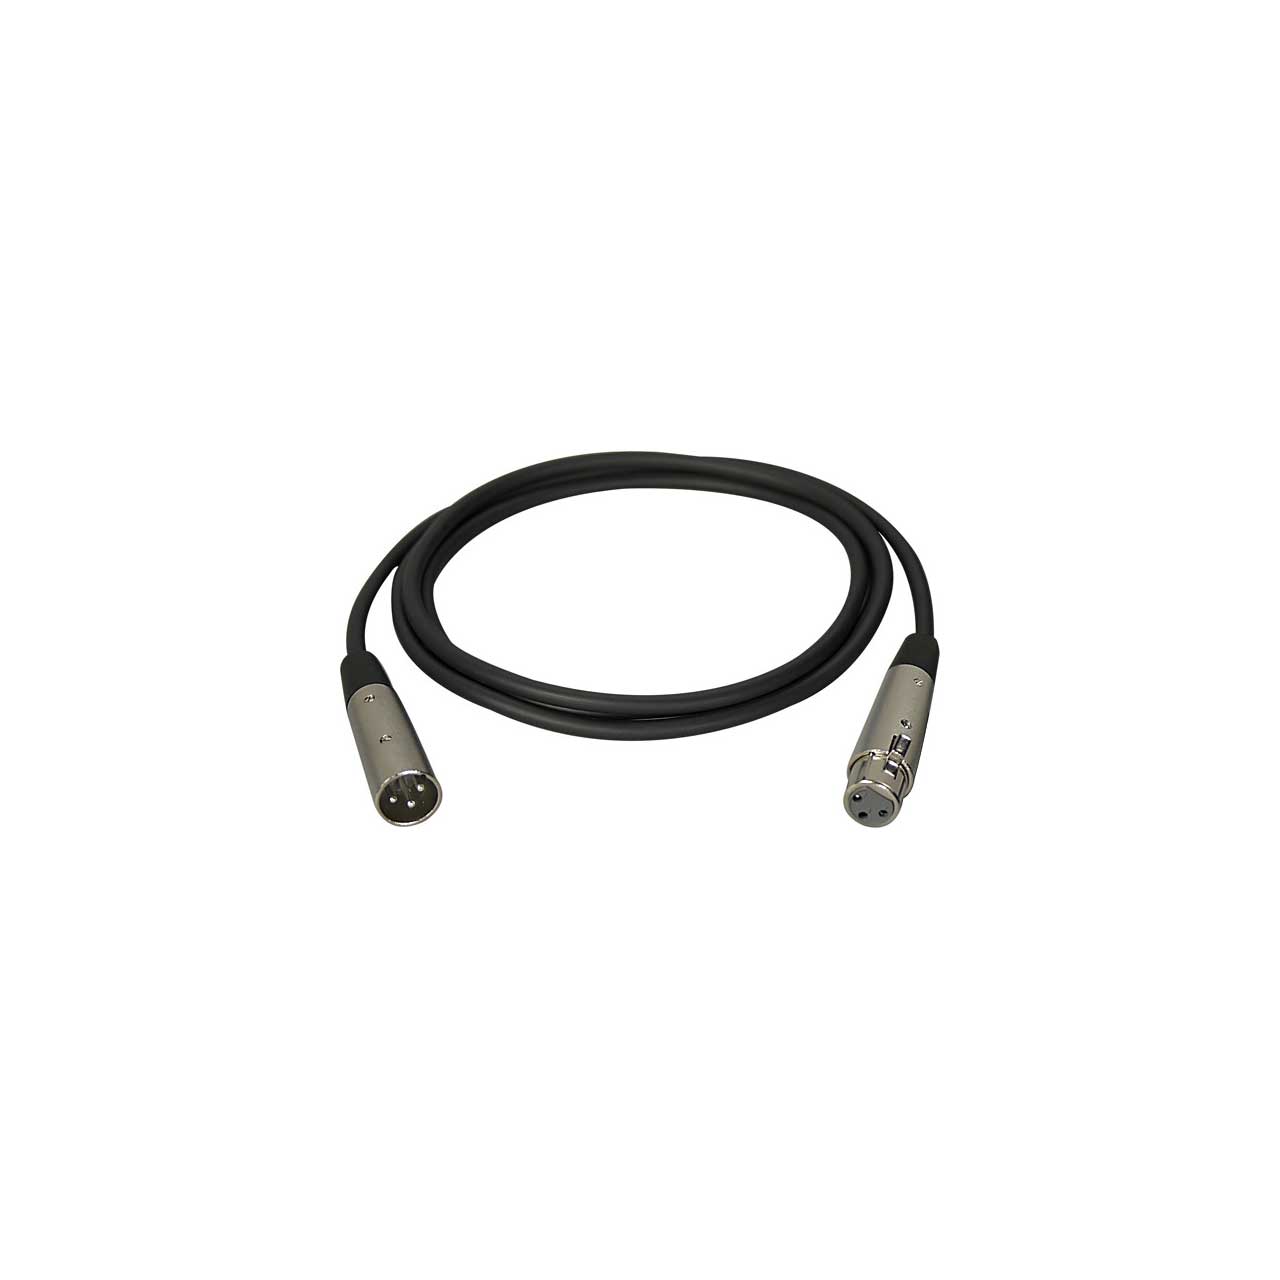 Connectronics Premium Quality XLR Male-XLR Female Audio Cable 6Ft